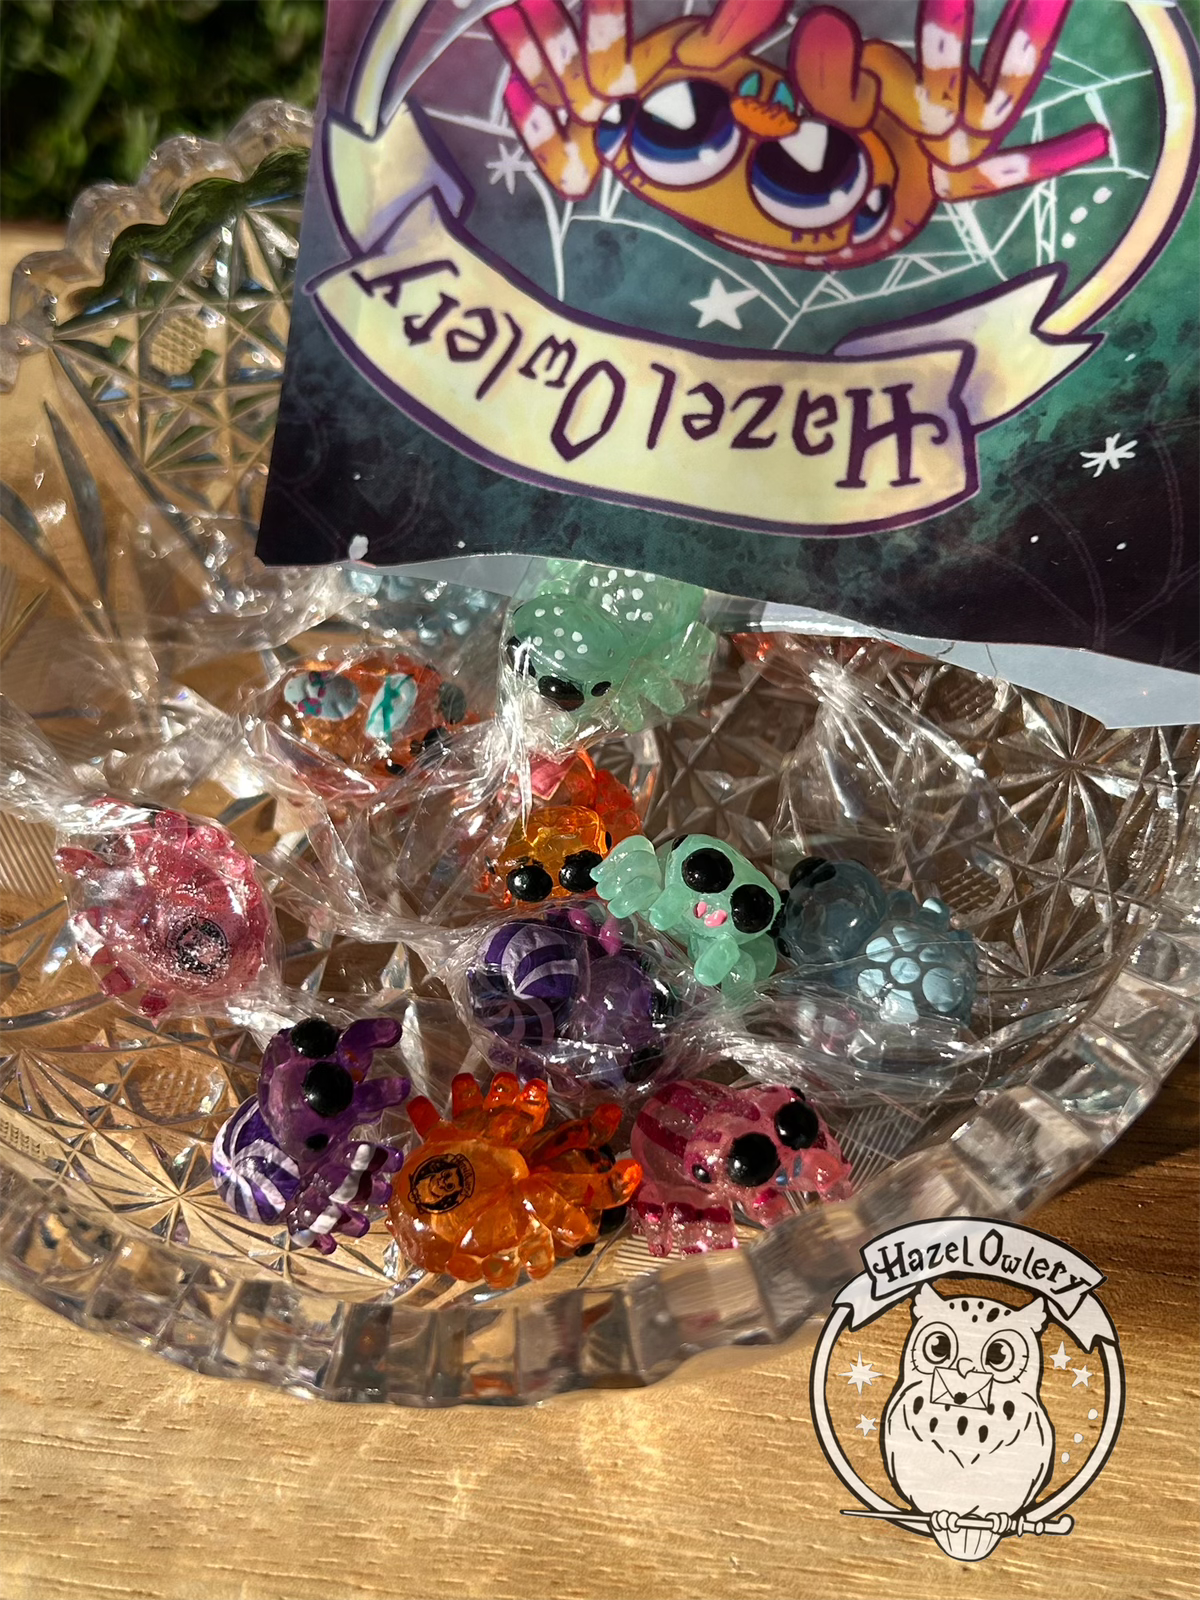 Spidey Sweets by Hazel Owlery